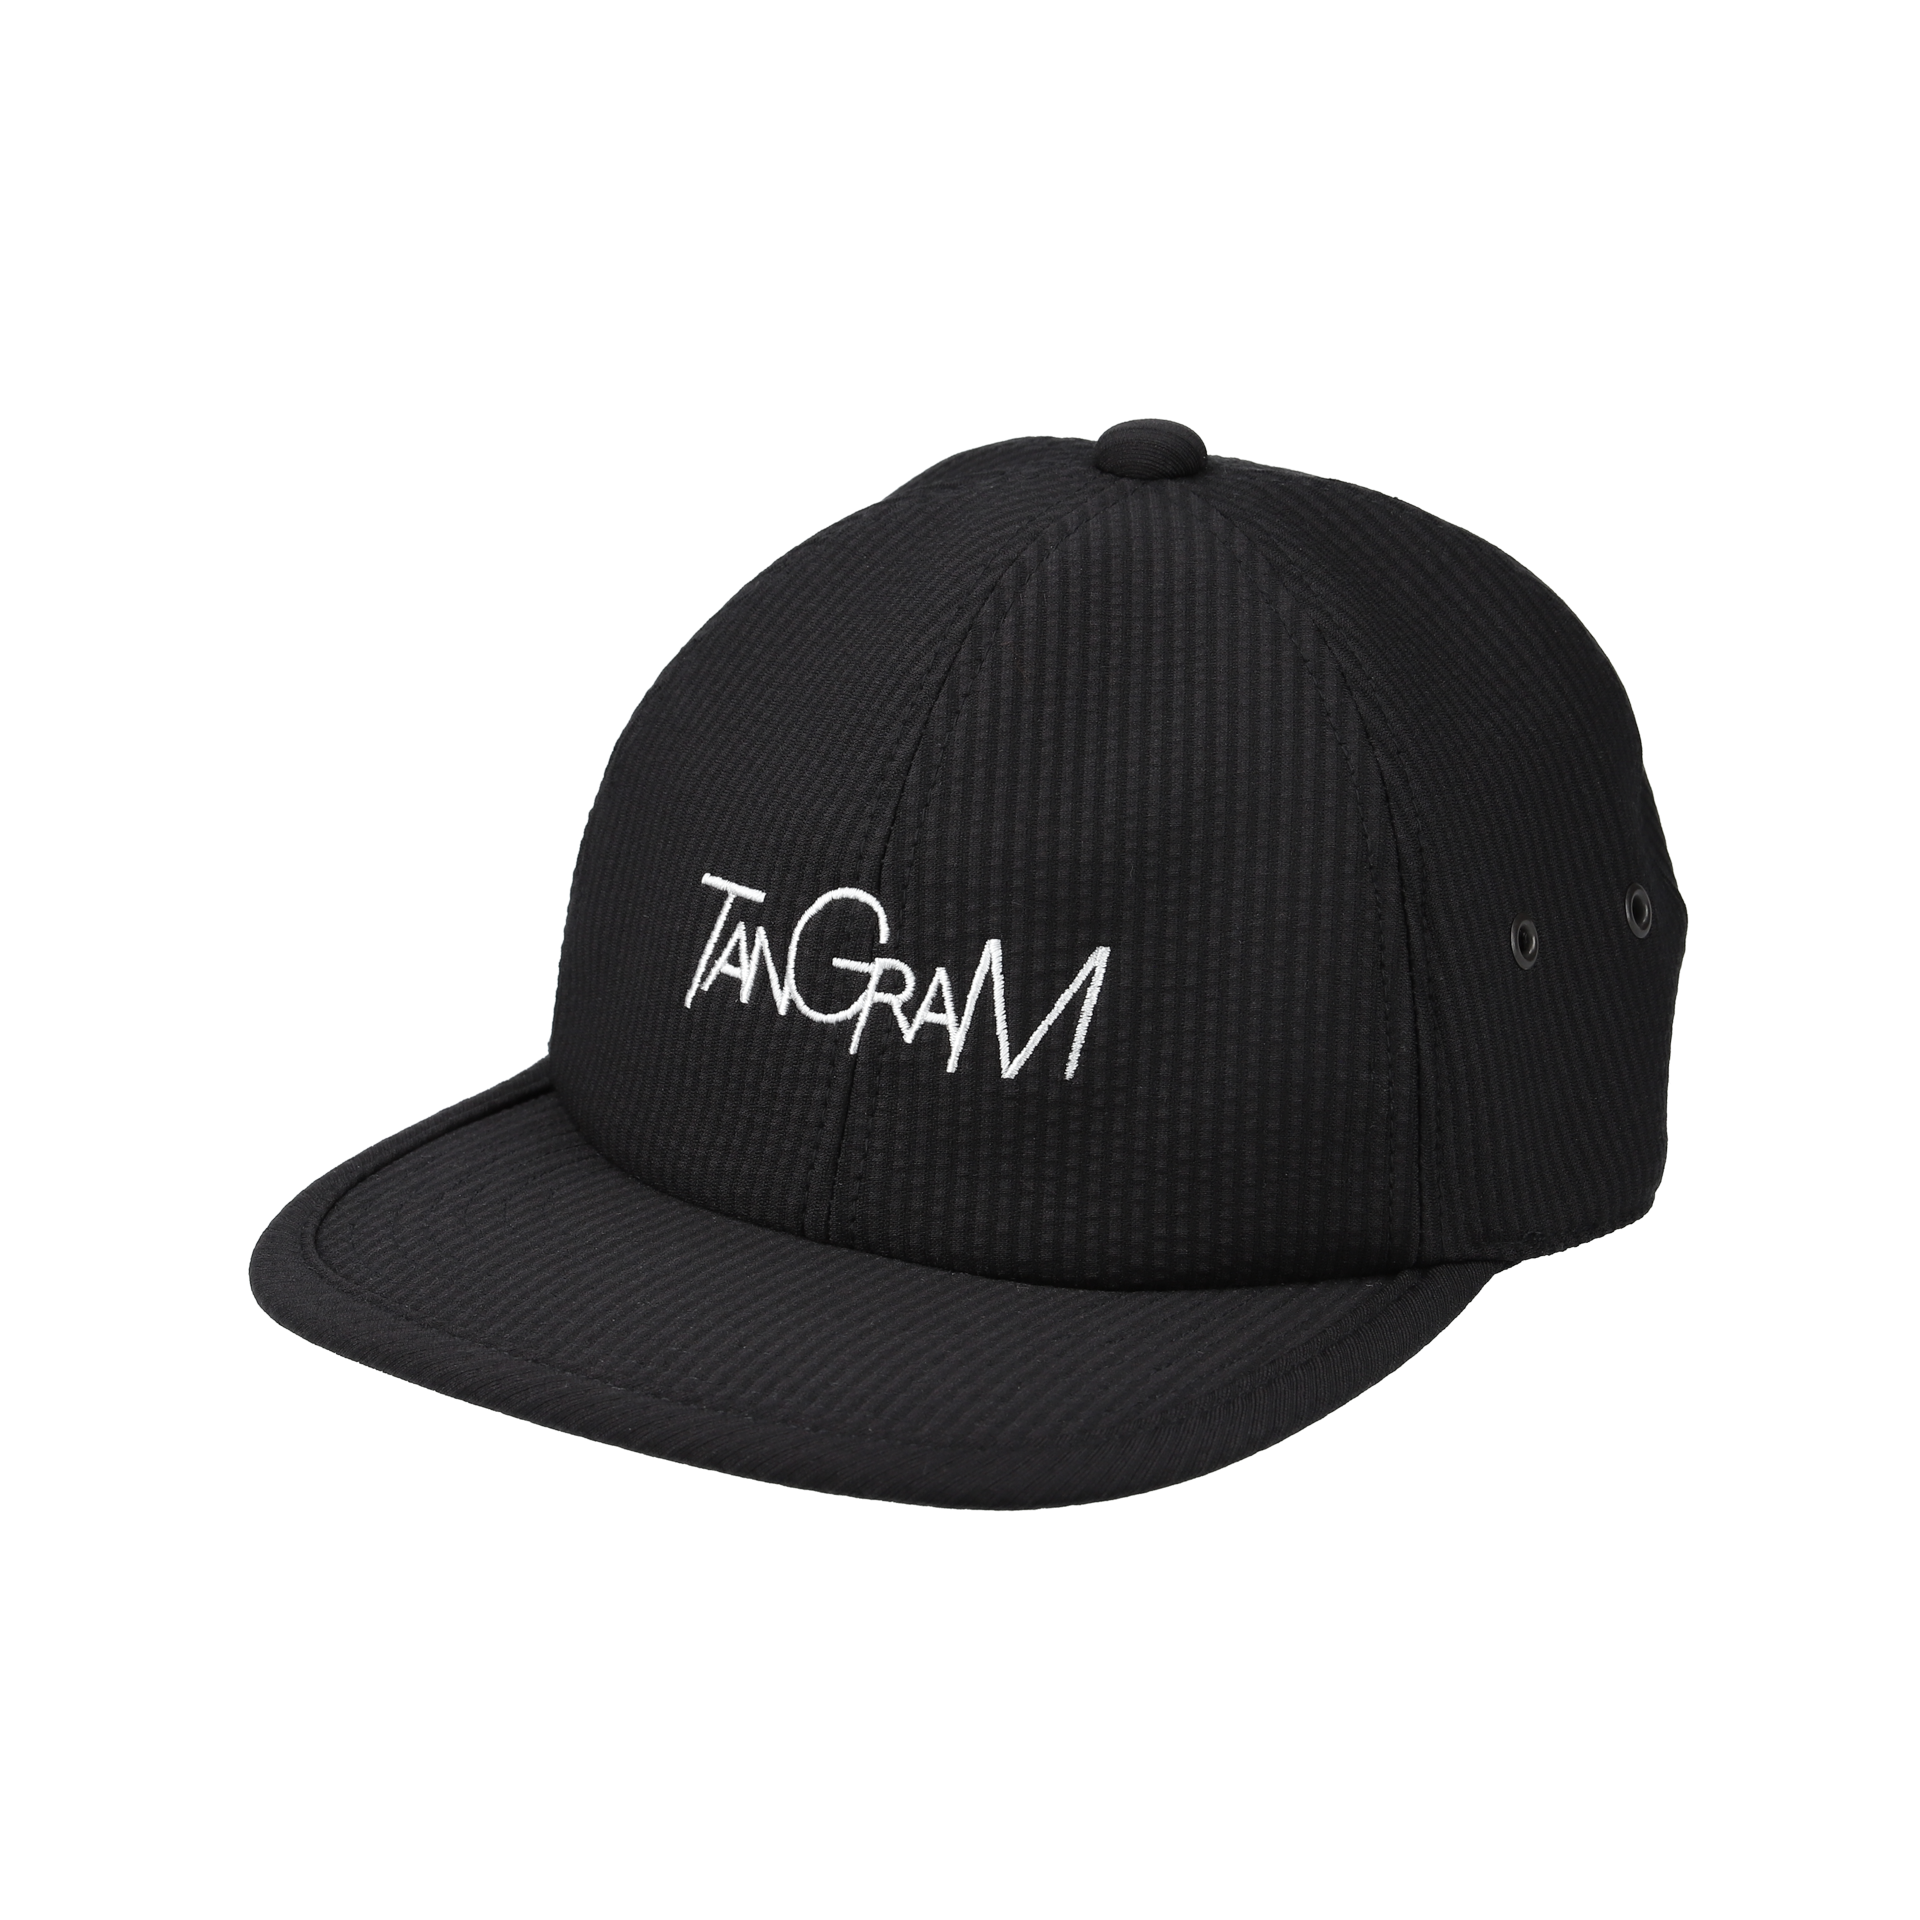 TANGRAM golf capタングラム ゴルフ キャップ - 帽子